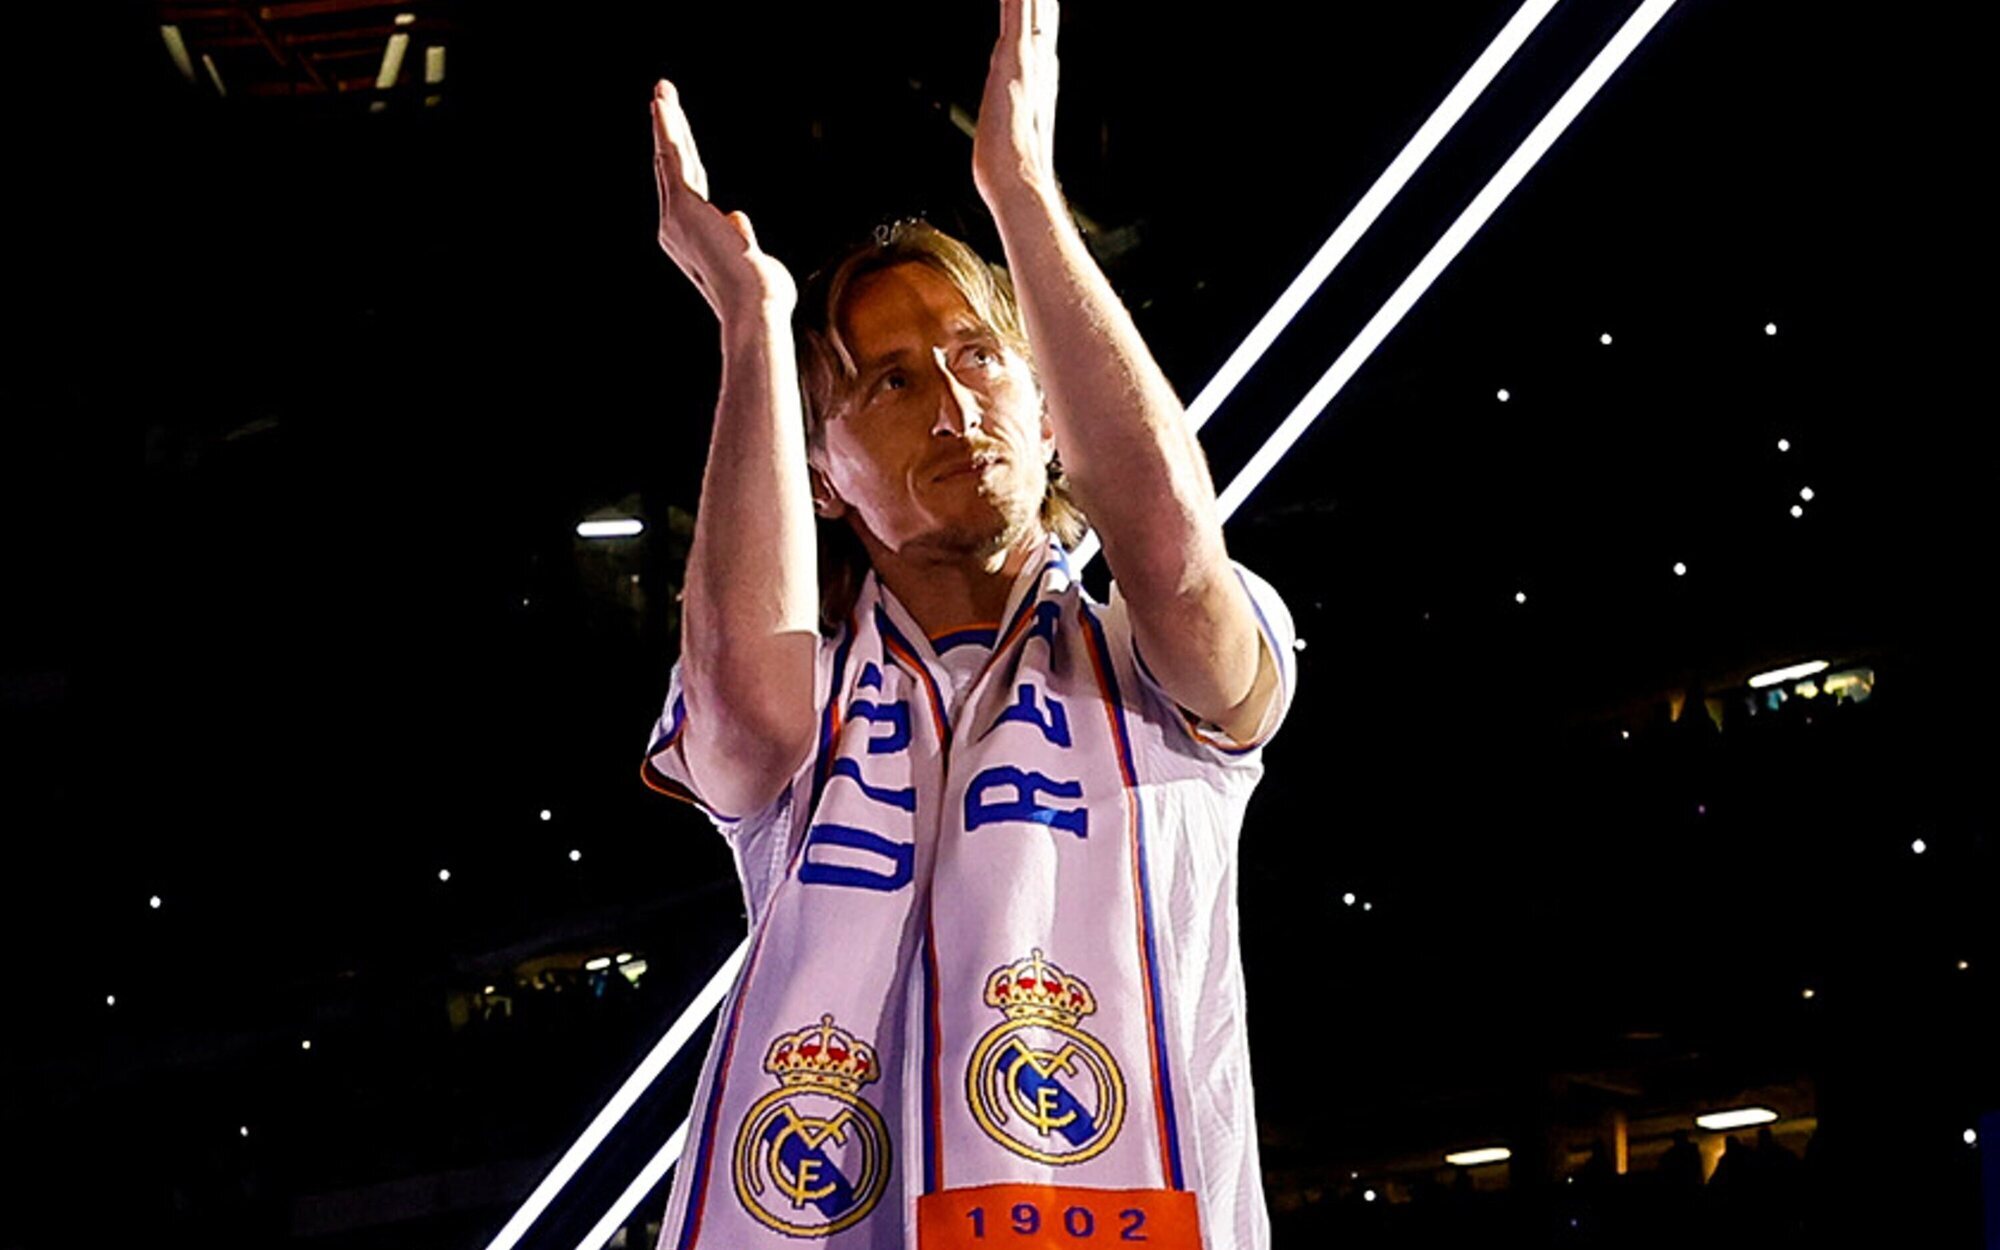 La celebración de la Champions del Real Madrid arrasa en la tarde y el prime time